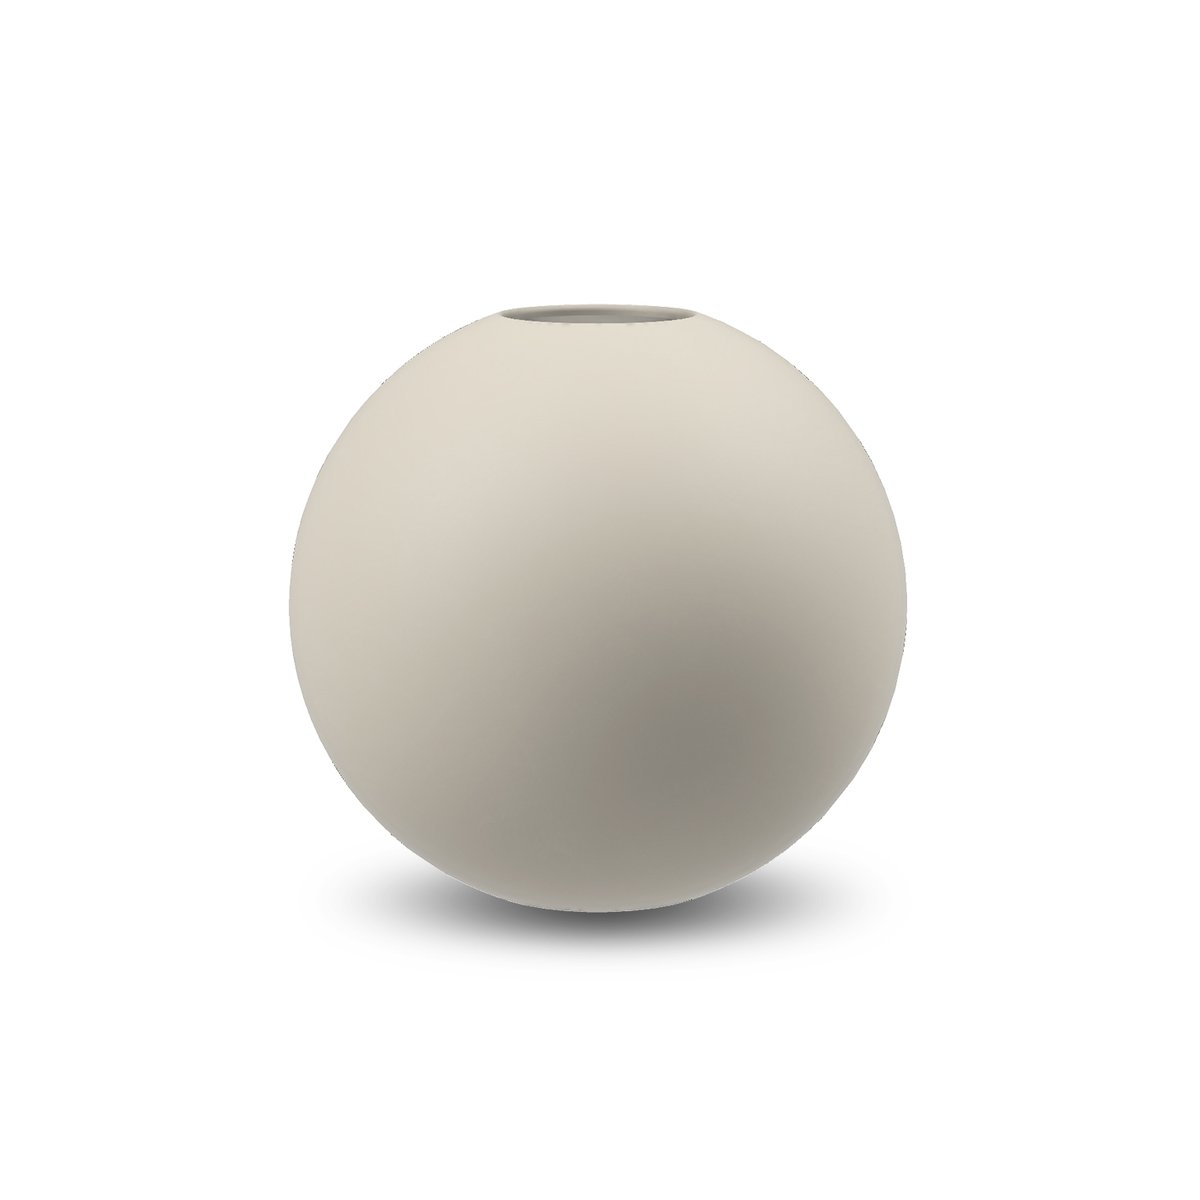 Bilde av Cooee Design Ball vase shell 10 cm